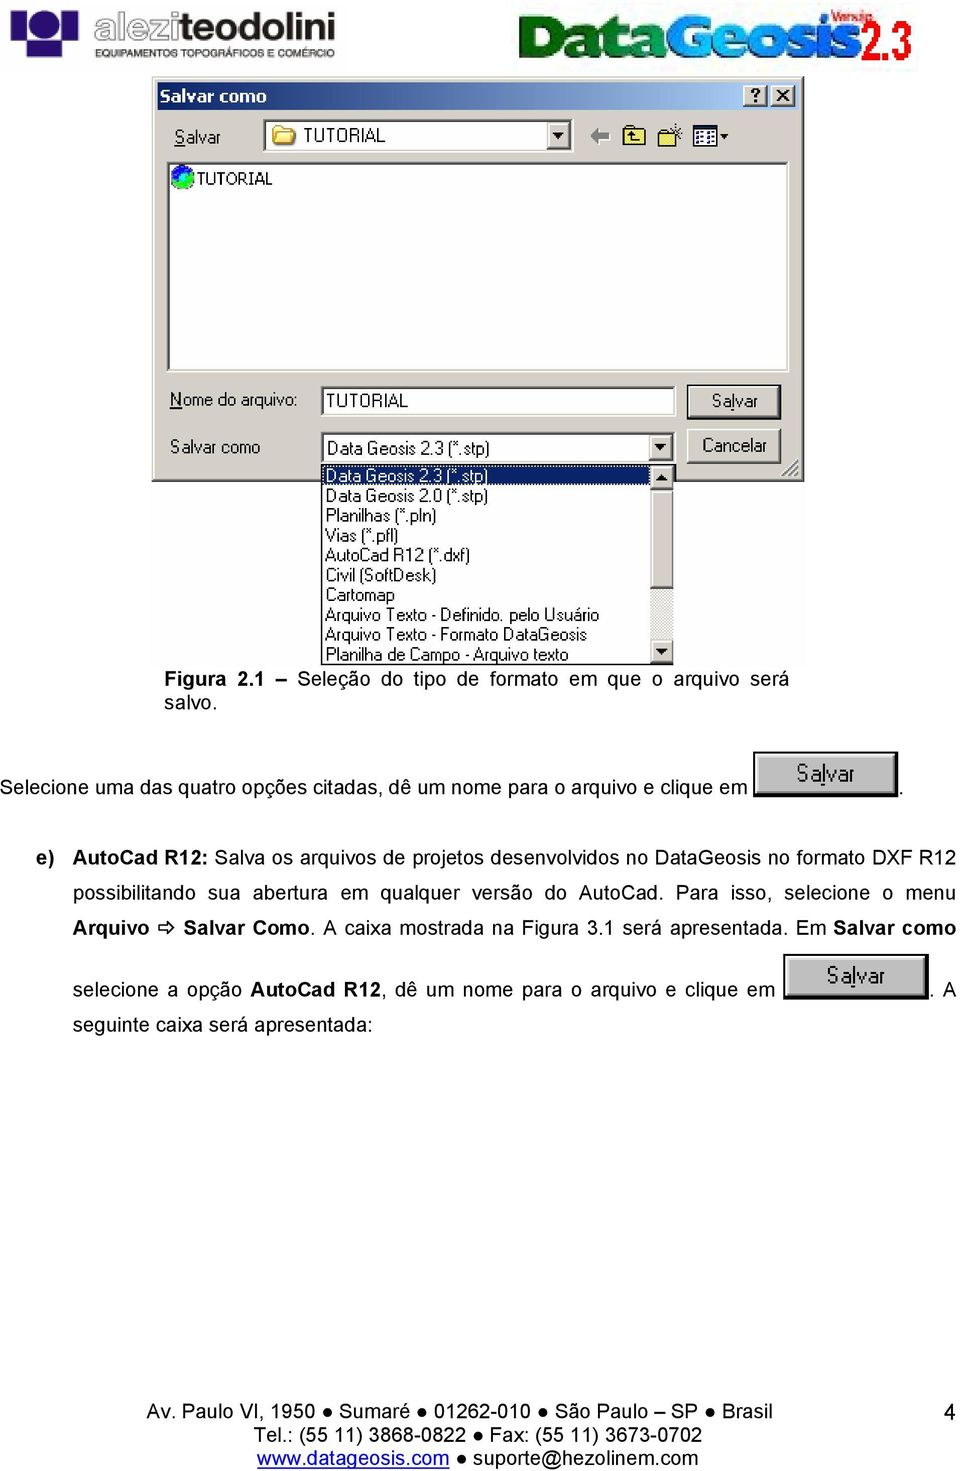 e) AutoCad R12: Salva os arquivos de projetos desenvolvidos no DataGeosis no formato DXF R12 possibilitando sua abertura em